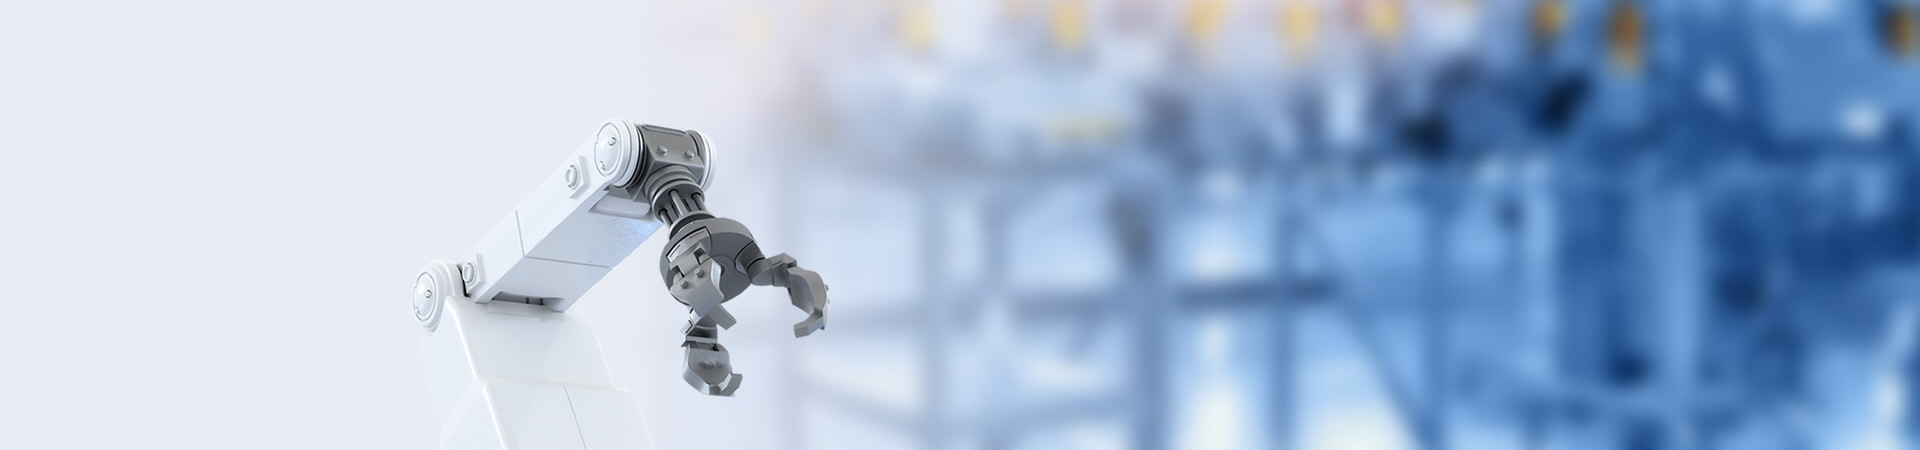 사용자 정의 Tinplate 로고 Kpop 만화 애니메이션 옷깃 핀 사용자 정의 3D 에나멜 프리메이슨 군대 스카우트 파일럿 윙 채플린 경비원 장교 금속 배지